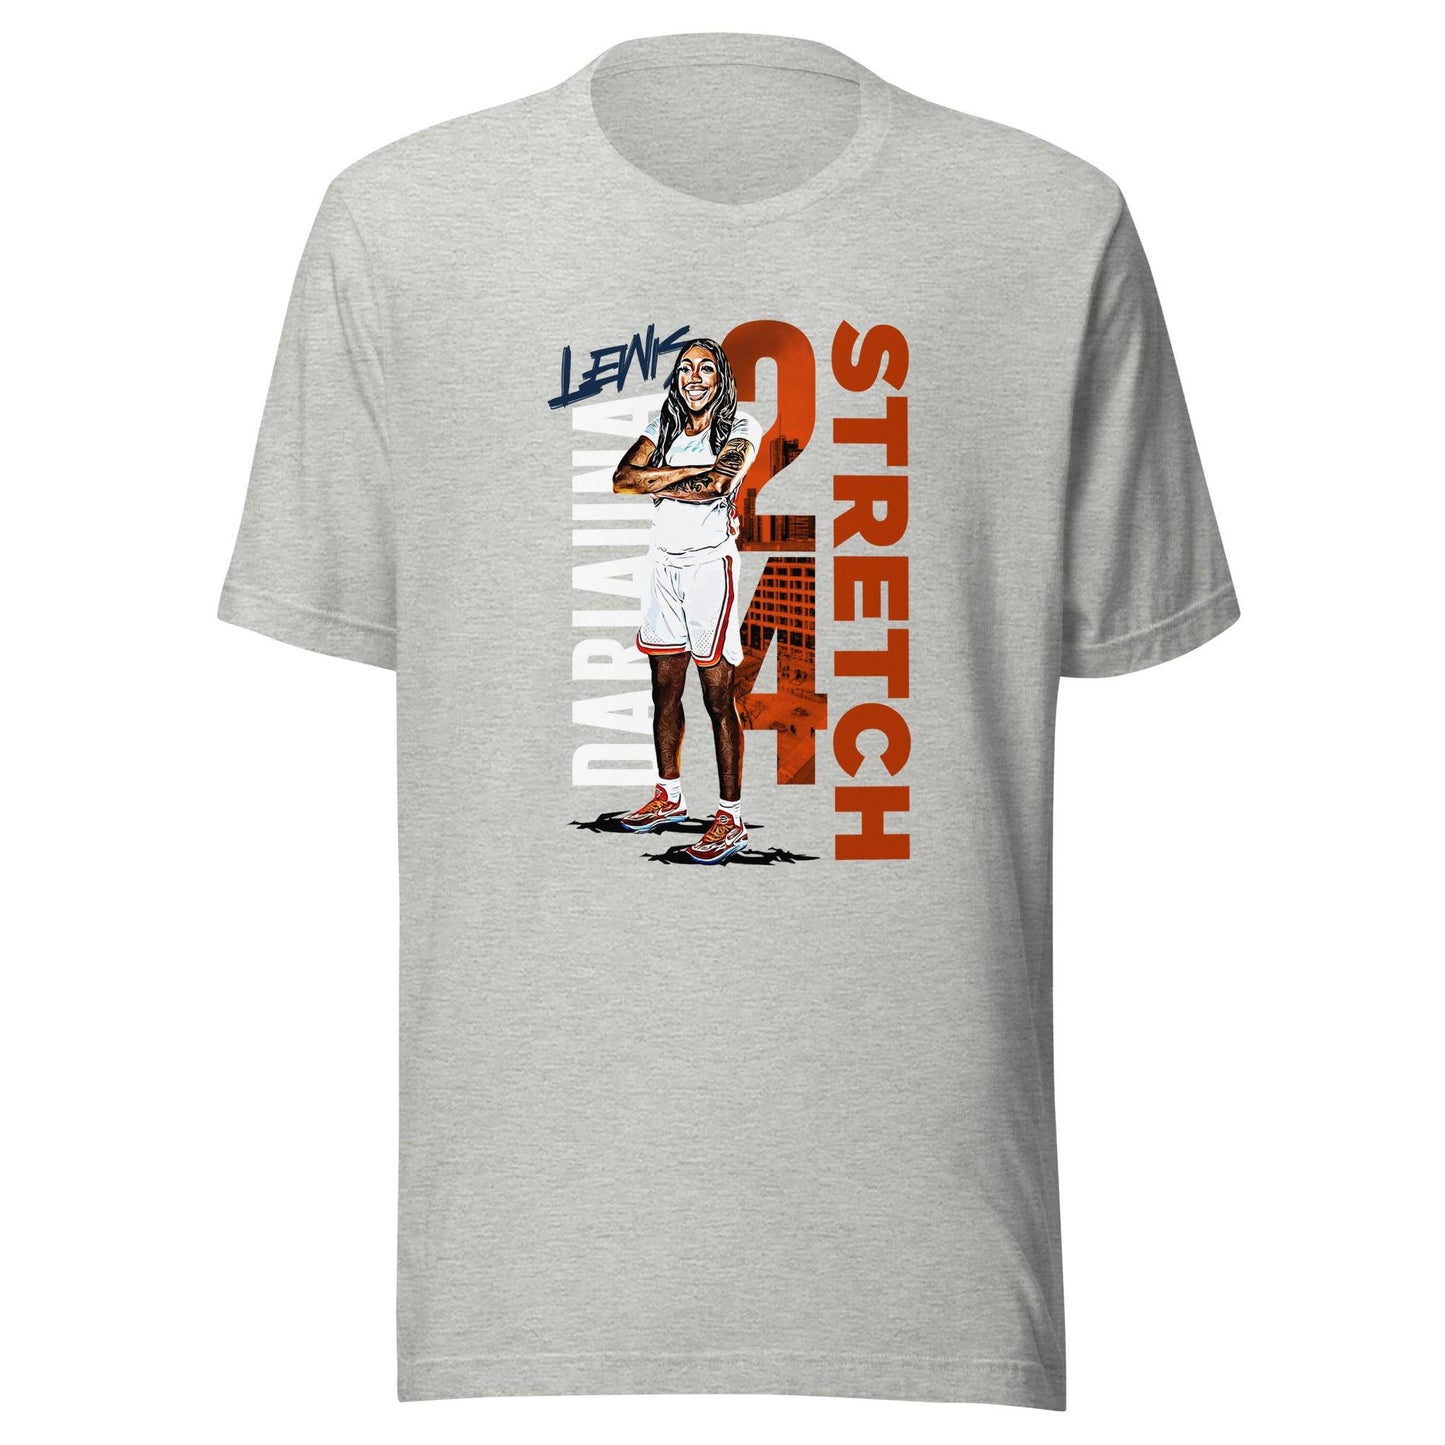 Dariauna Lewis "Stretch" t-shirt - Fan Arch